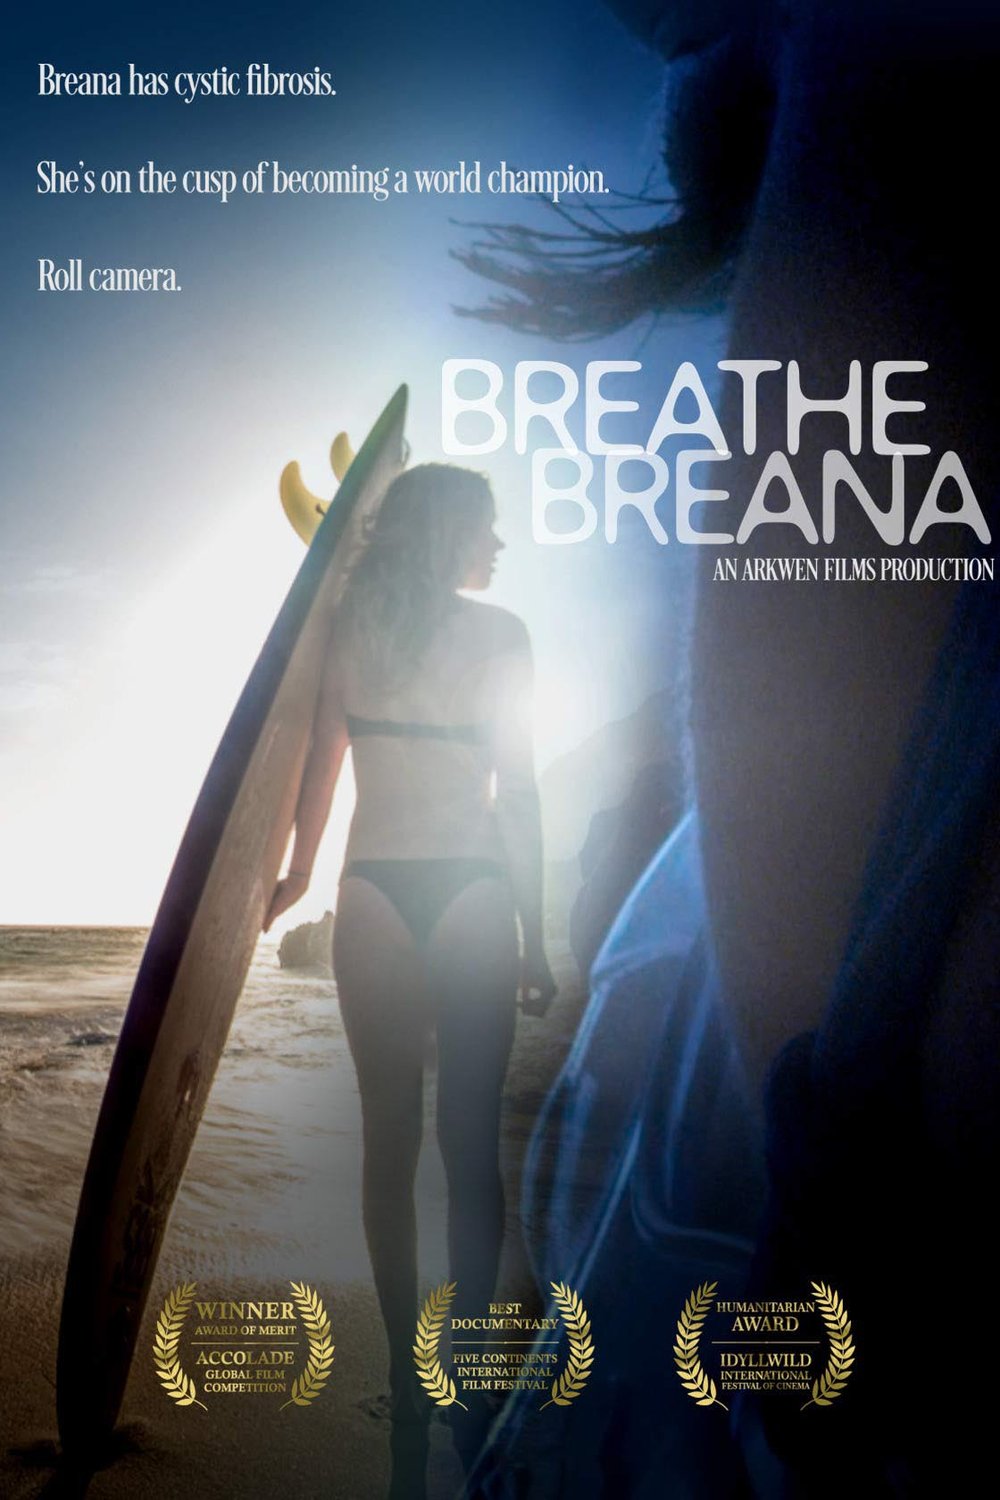 L'affiche du film Breathe Breana